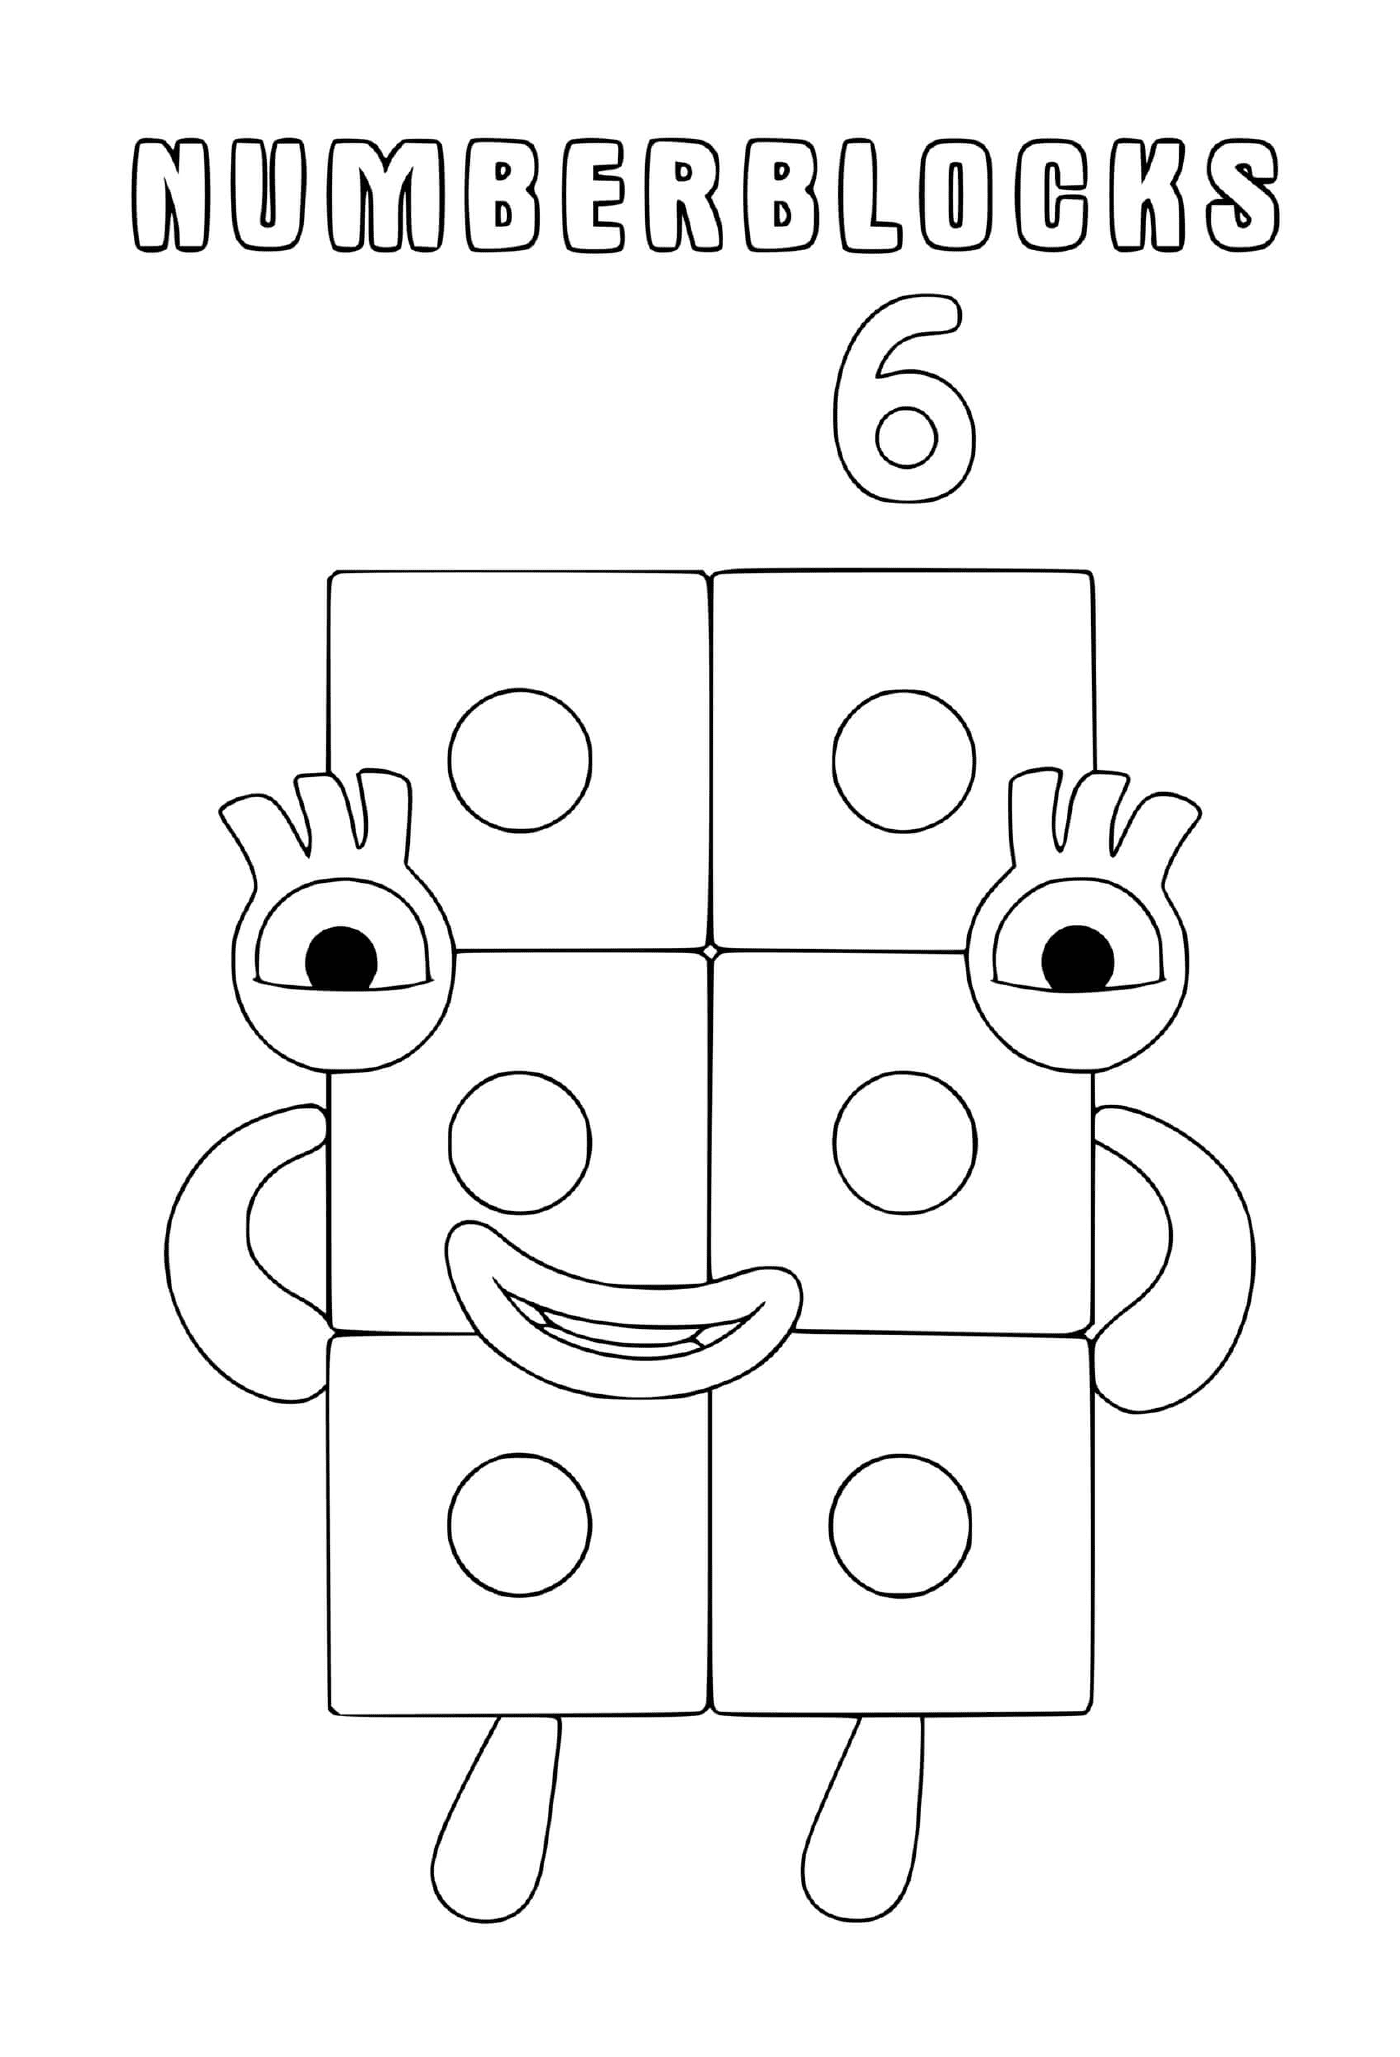  Numero di blocchi numero 6, un blocco con gli occhi 